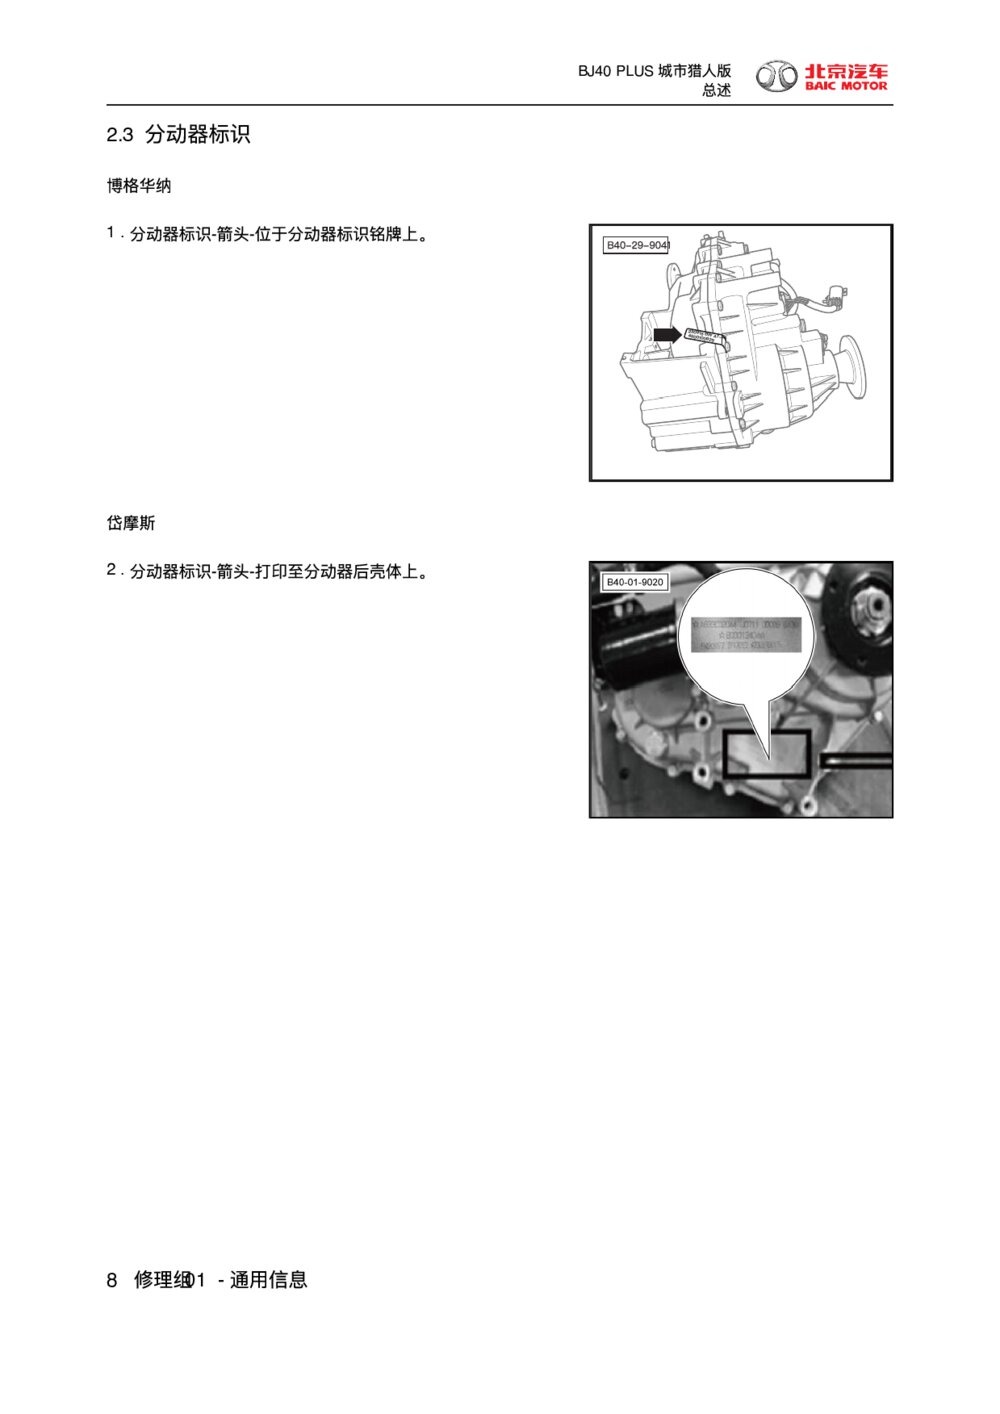 2018款北京BJ40 PLUS城市猎人版分动器标识1